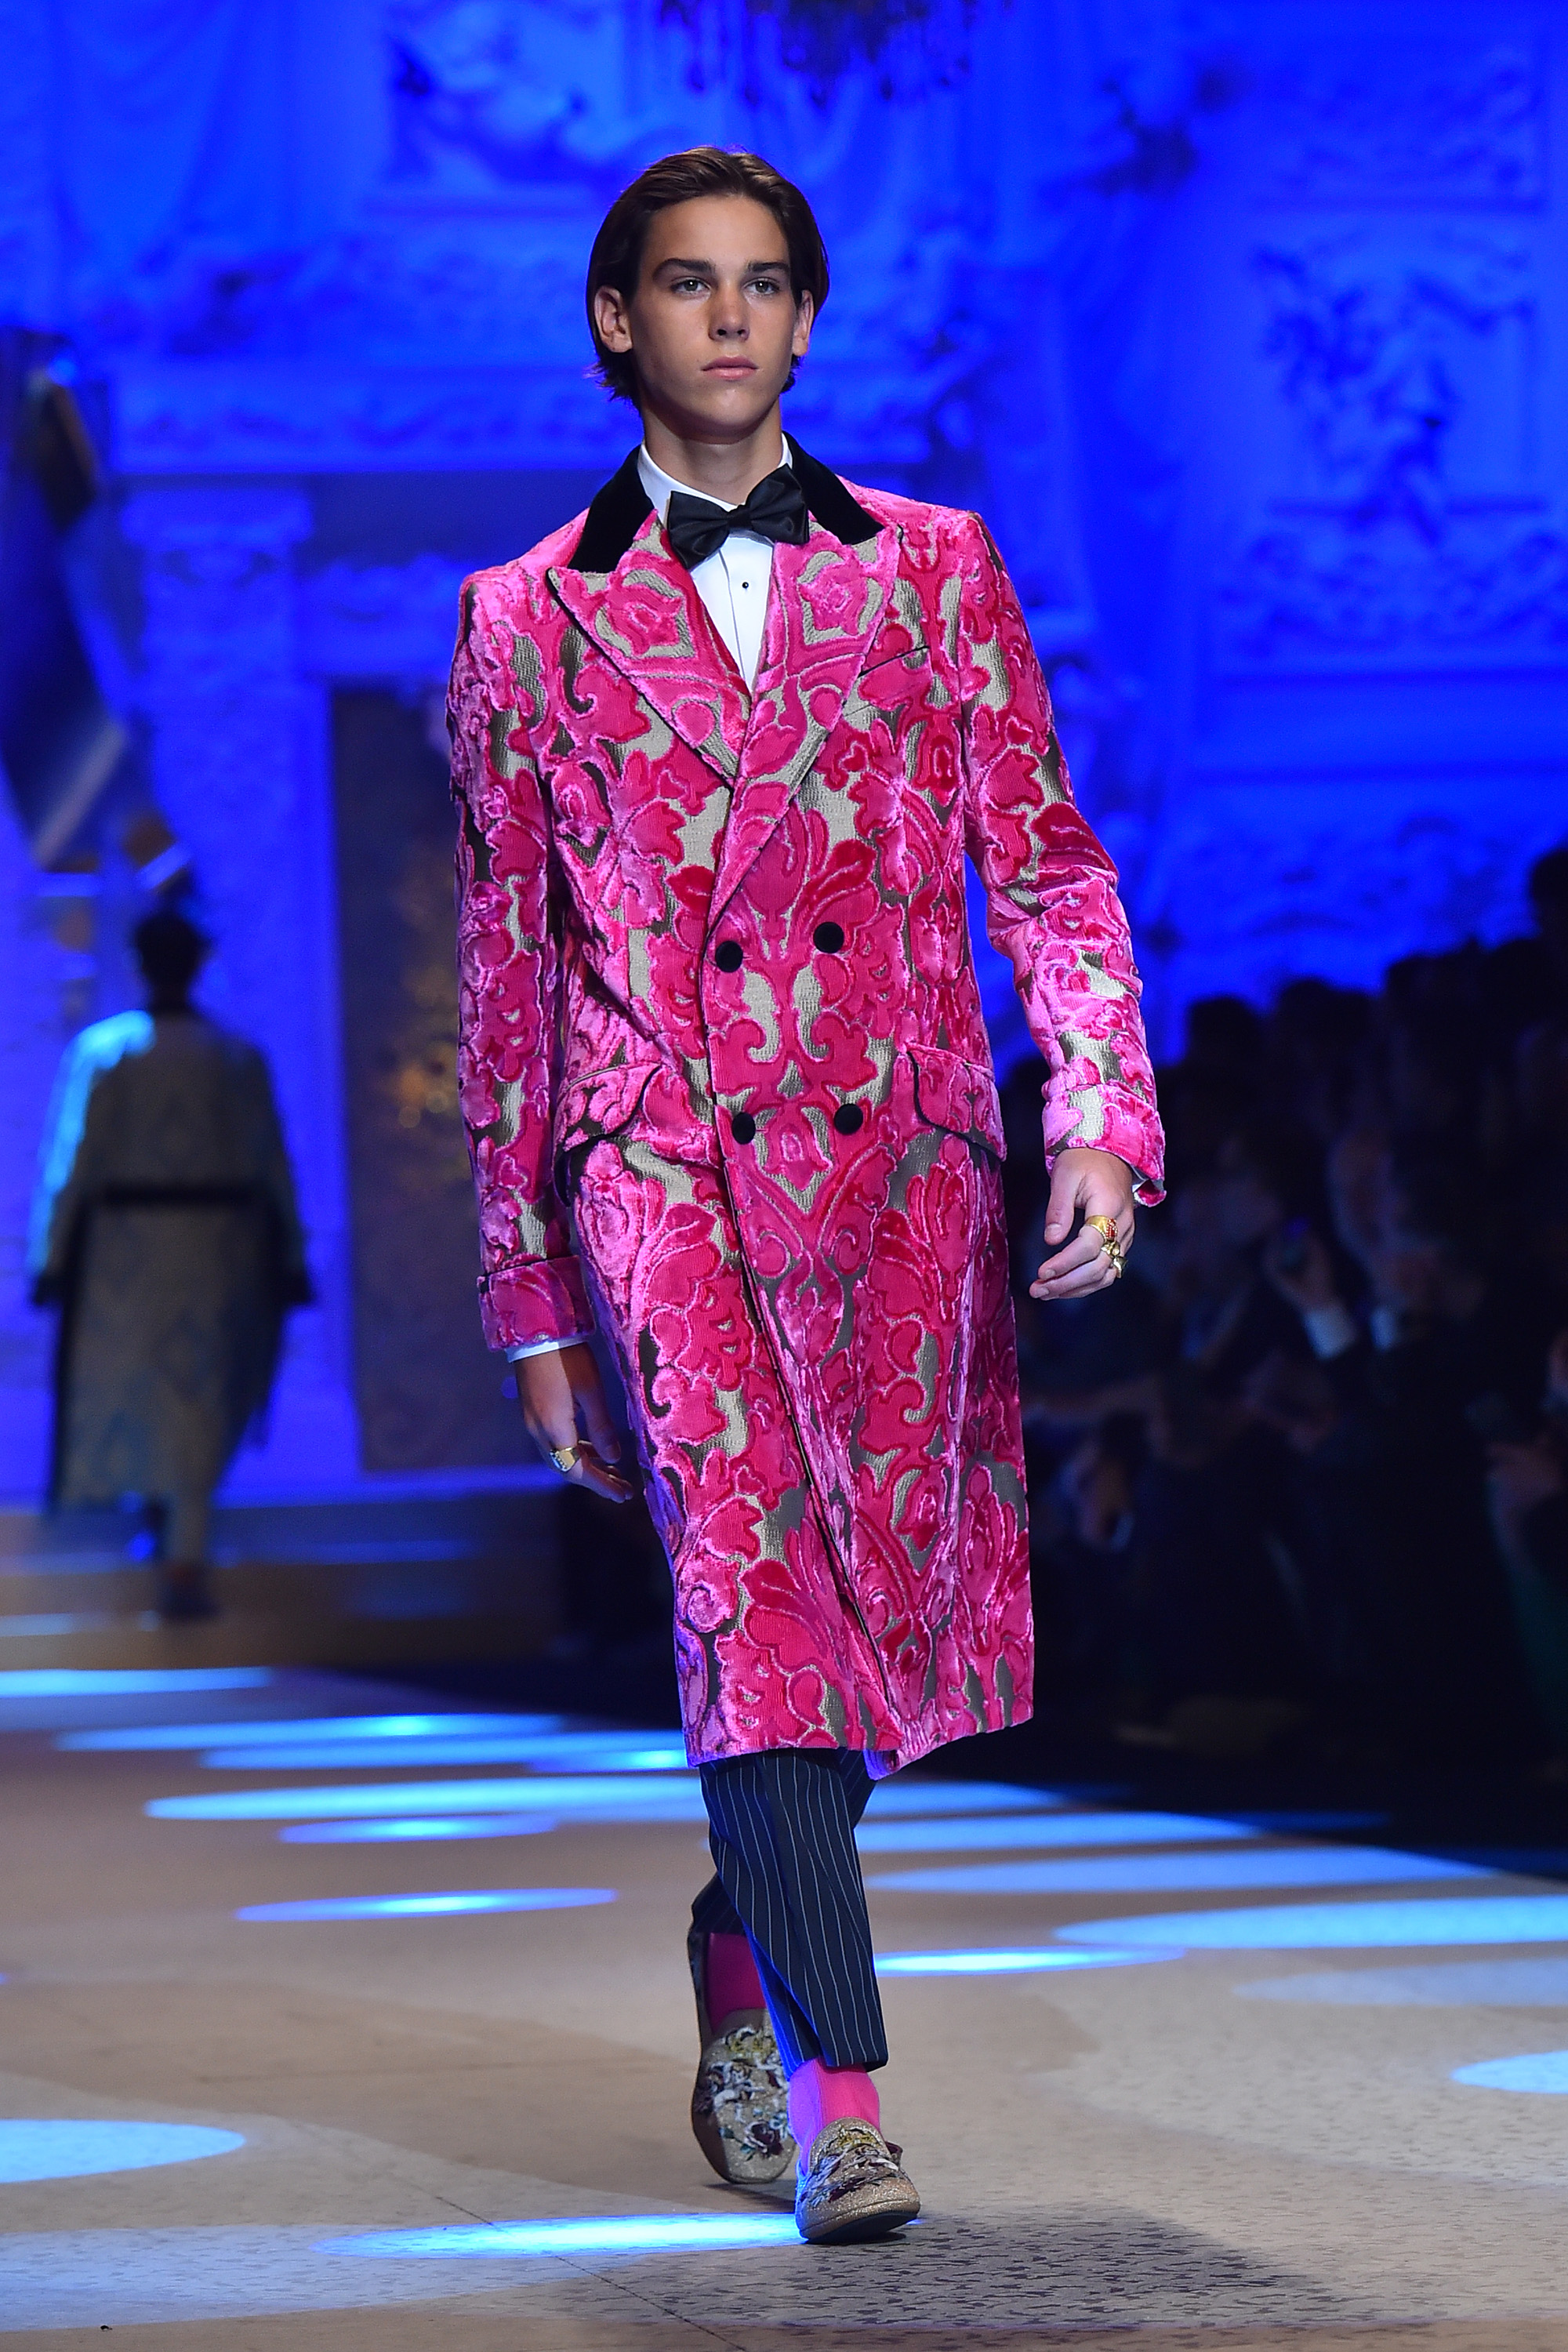 Paris Brosnan camina por la pasarela en el desfile de Dolce &amp; Gabbana durante la Semana de la Moda Masculina de Milán Otoño/Invierno 2018/19 el 13 de enero de 2018 en Milán, Italia | Foto: Getty Images